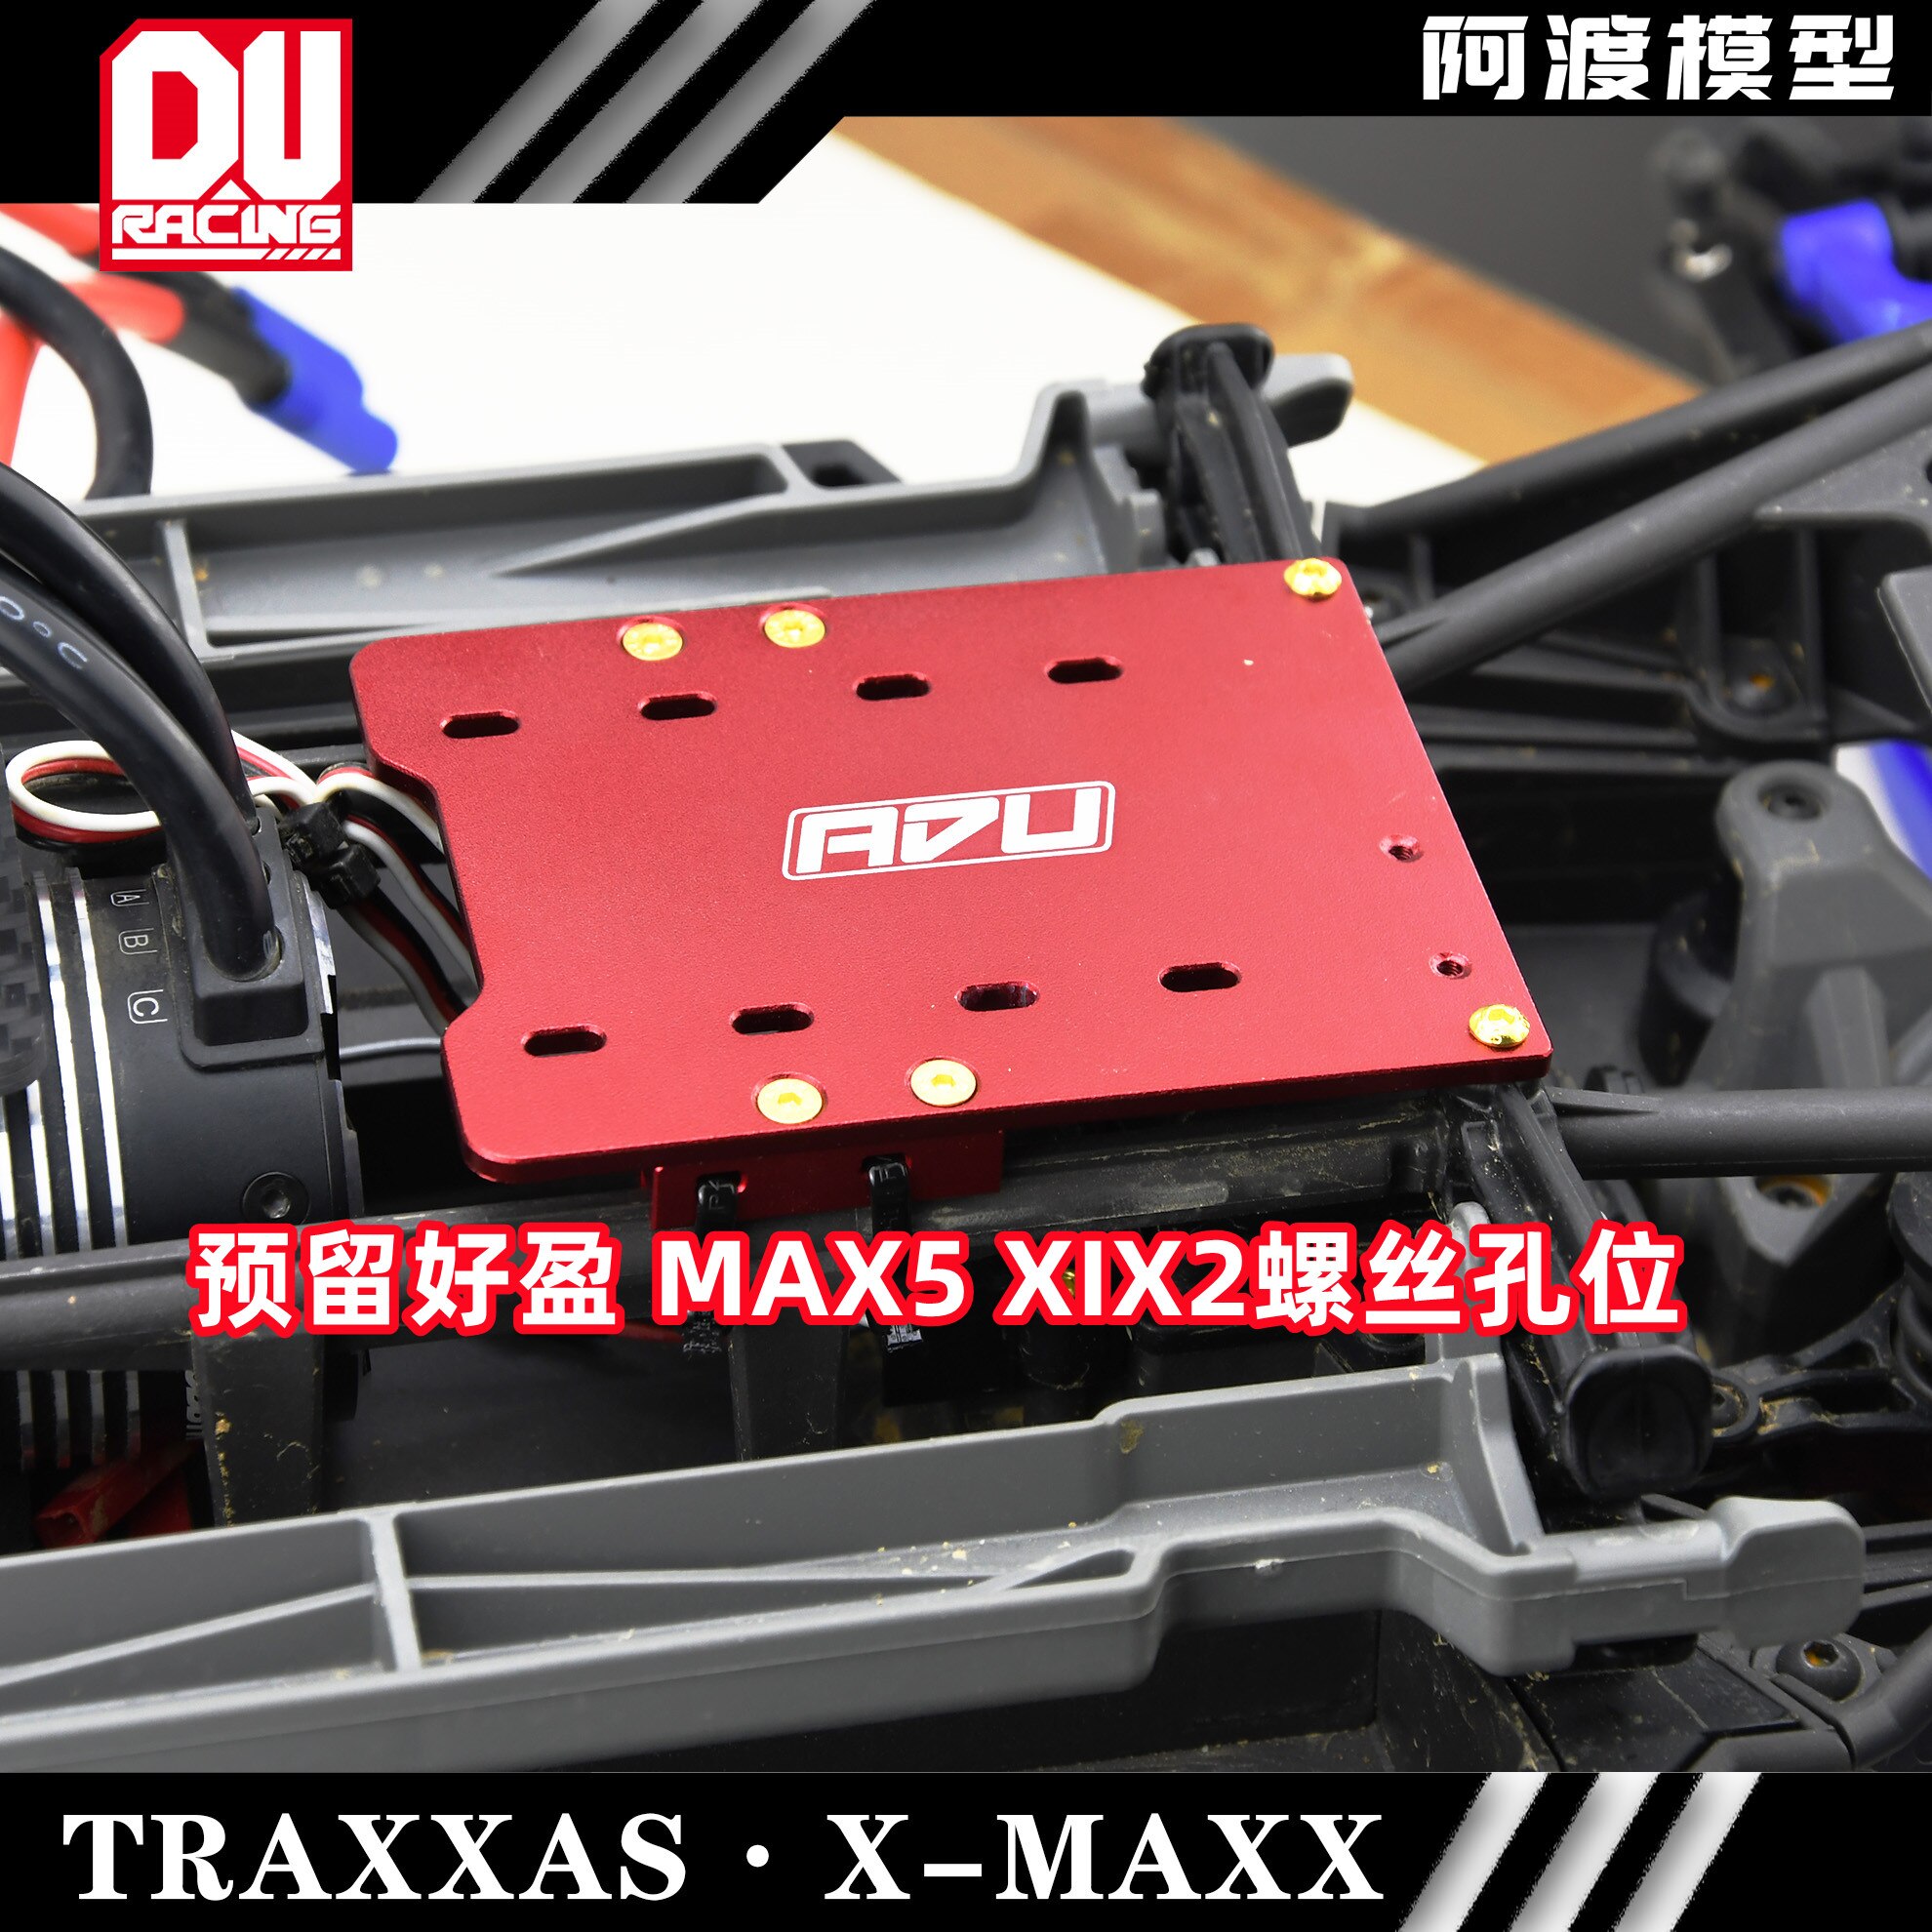 호비윙 max5 캐슬 xlx2 용 XMAXX esc 플레이트, 1/5 X-MAXX